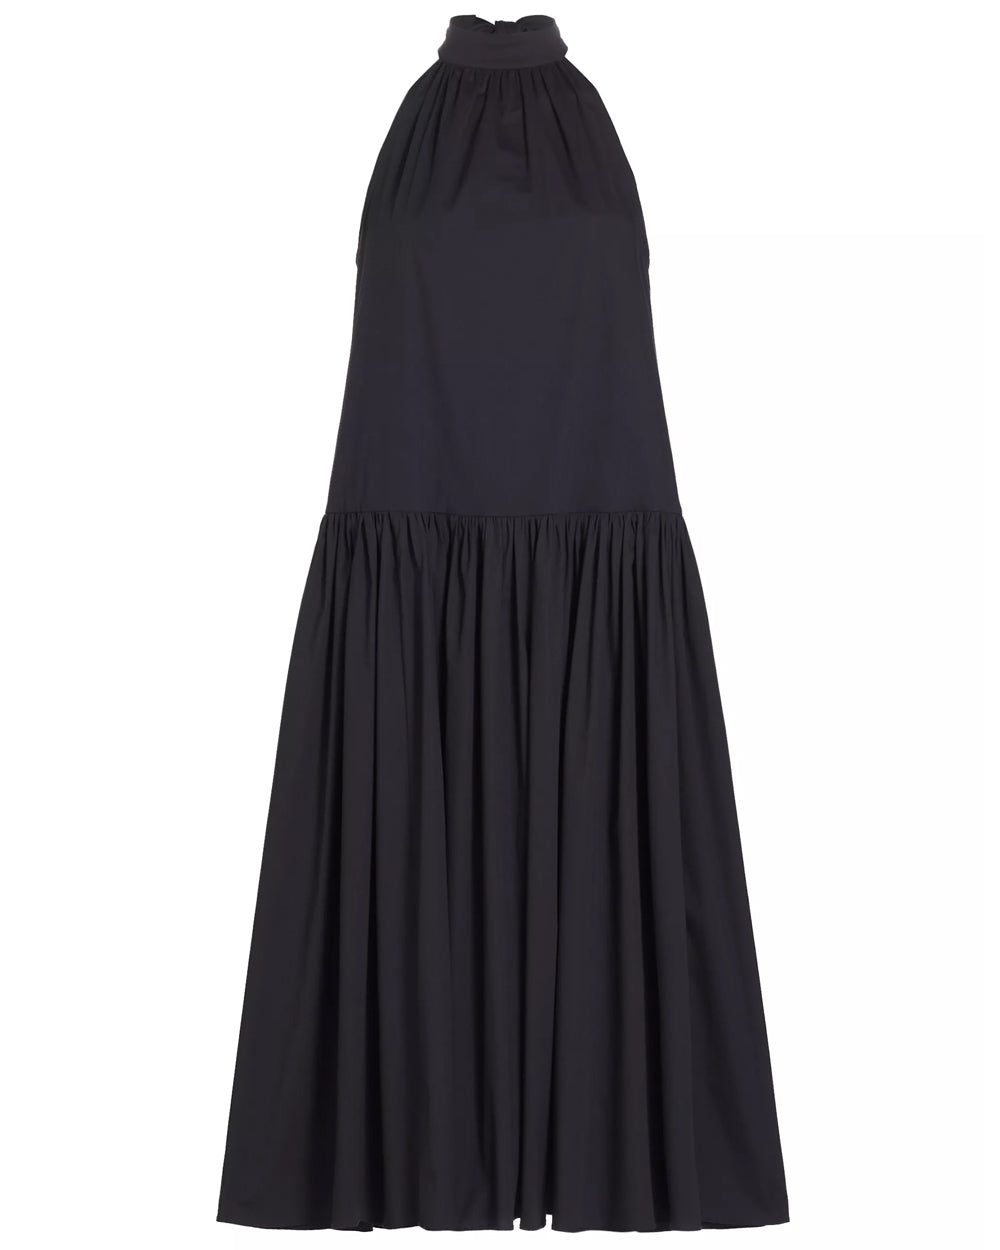 Black Marlowe Midi Dress